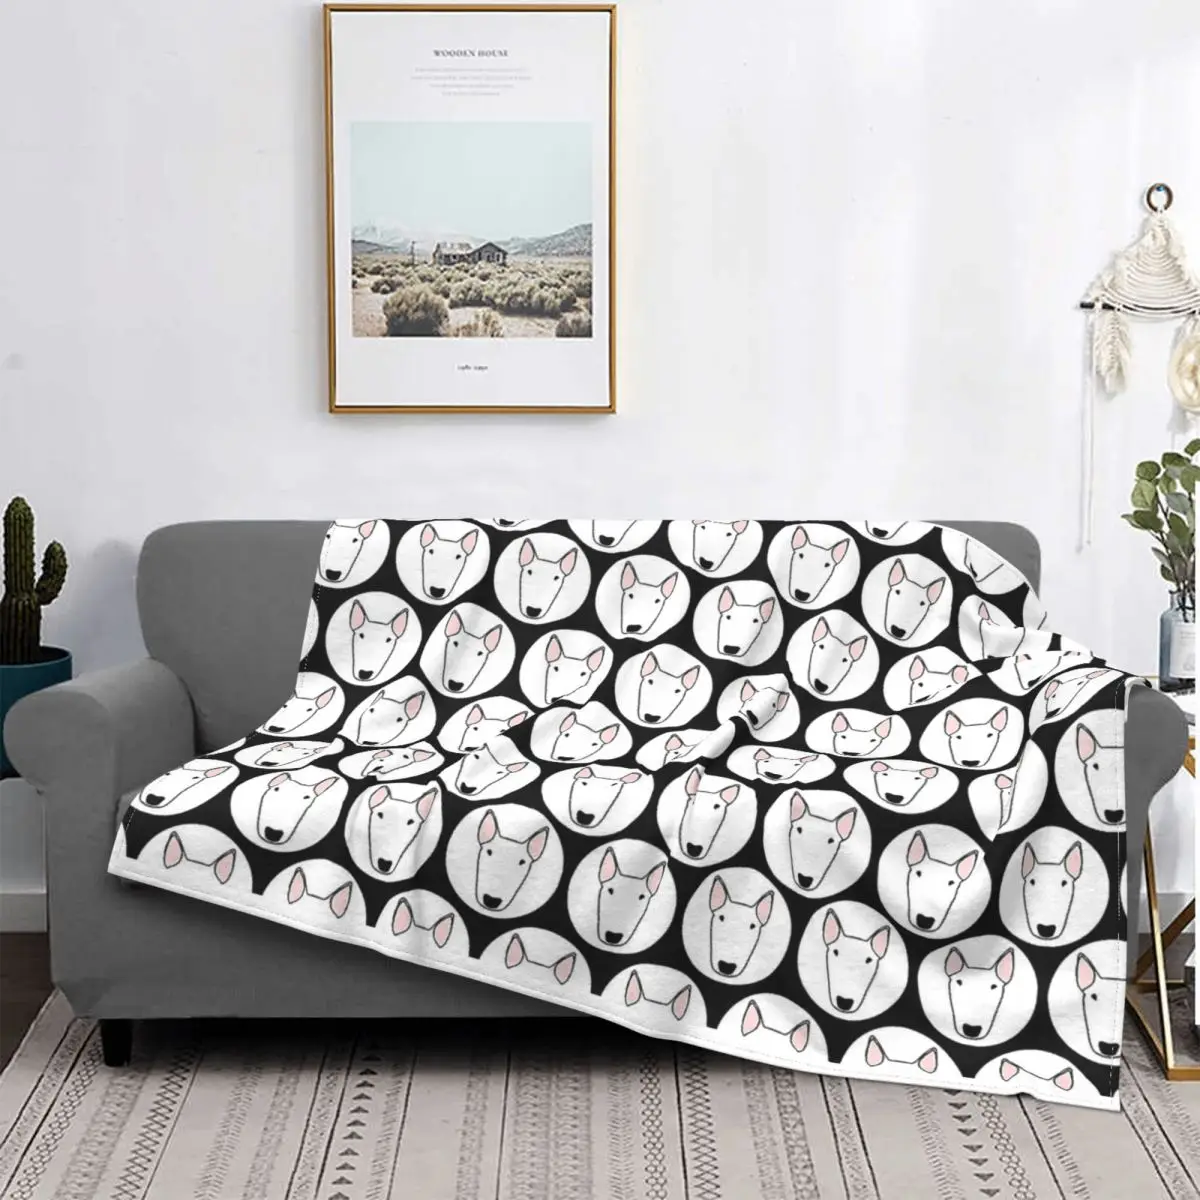 Mantas con burbujas de perro Bull Terrier, manta de felpa, decoración de sofá para el hogar, colcha ligera